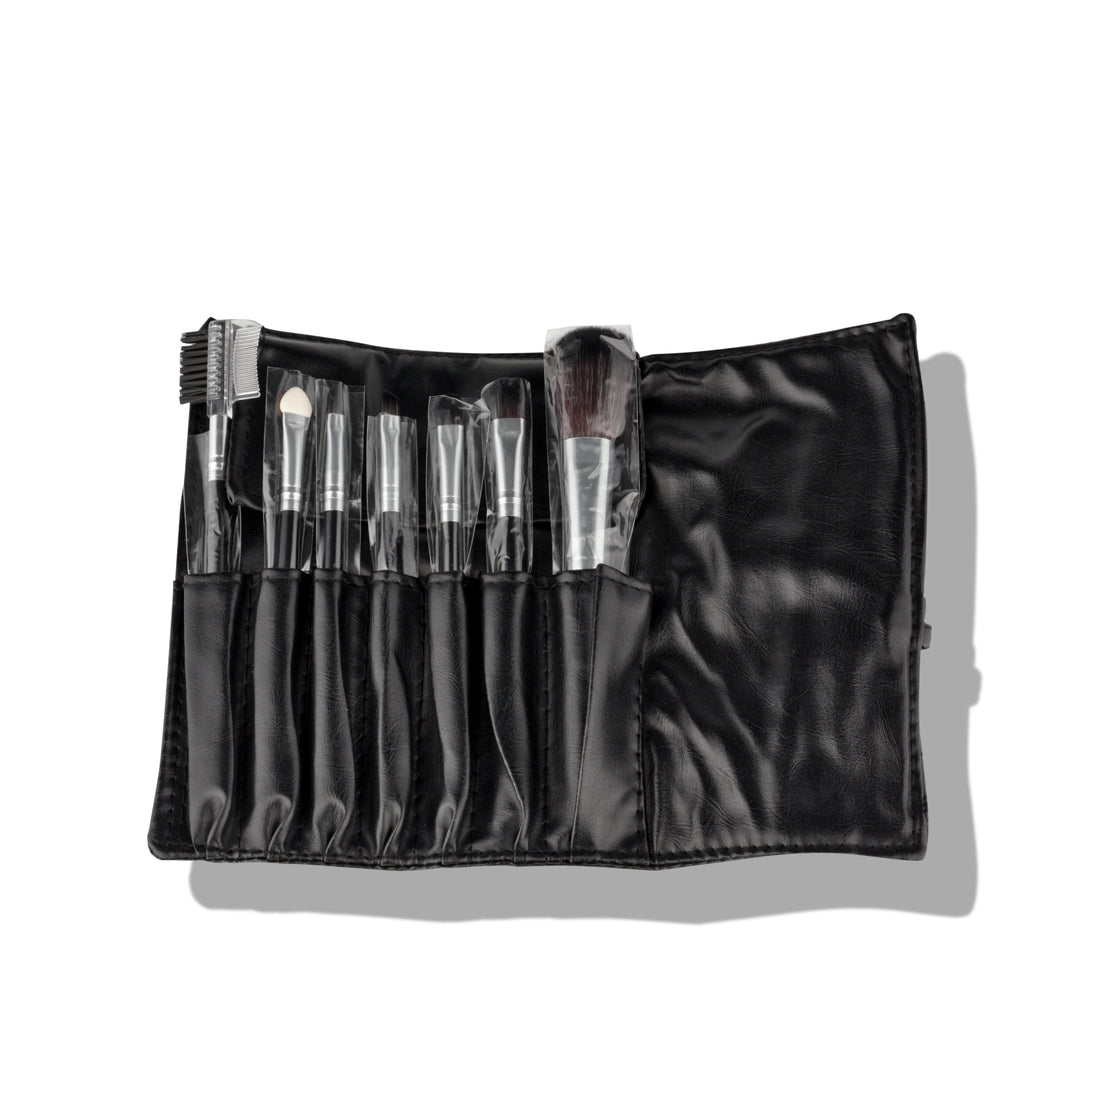 Vista™ Makeup Brush Set